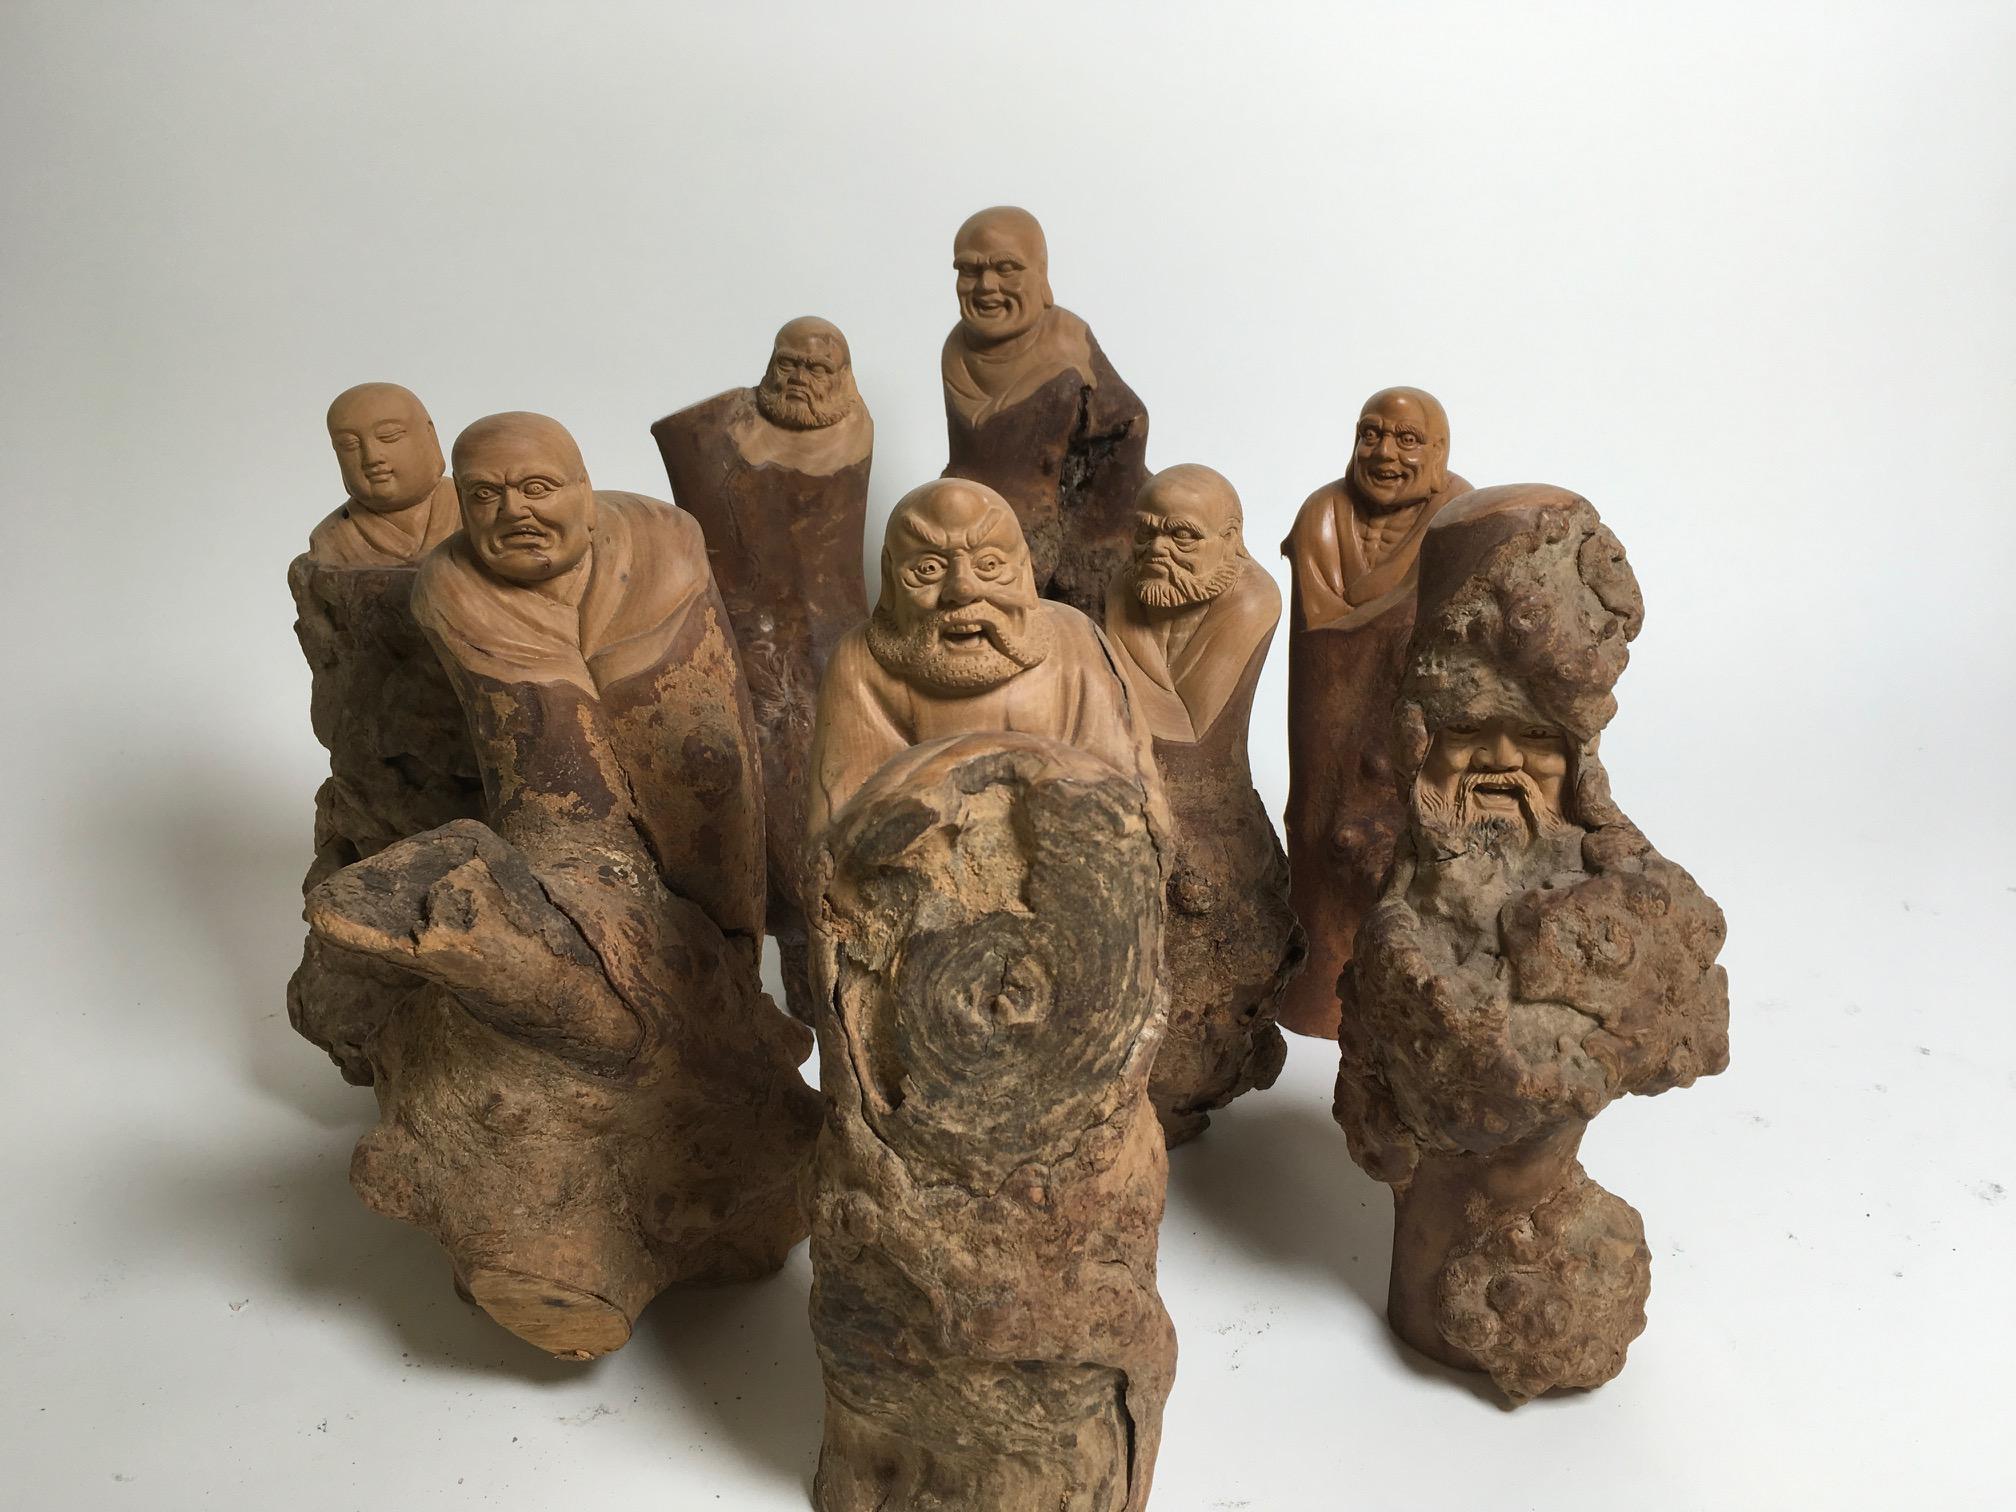 8 belles sculptures en bois de vigne sculptées avec base en bois produites en Chine. Collection privée italienne.
La hauteur varie de 20 à 24 cm.